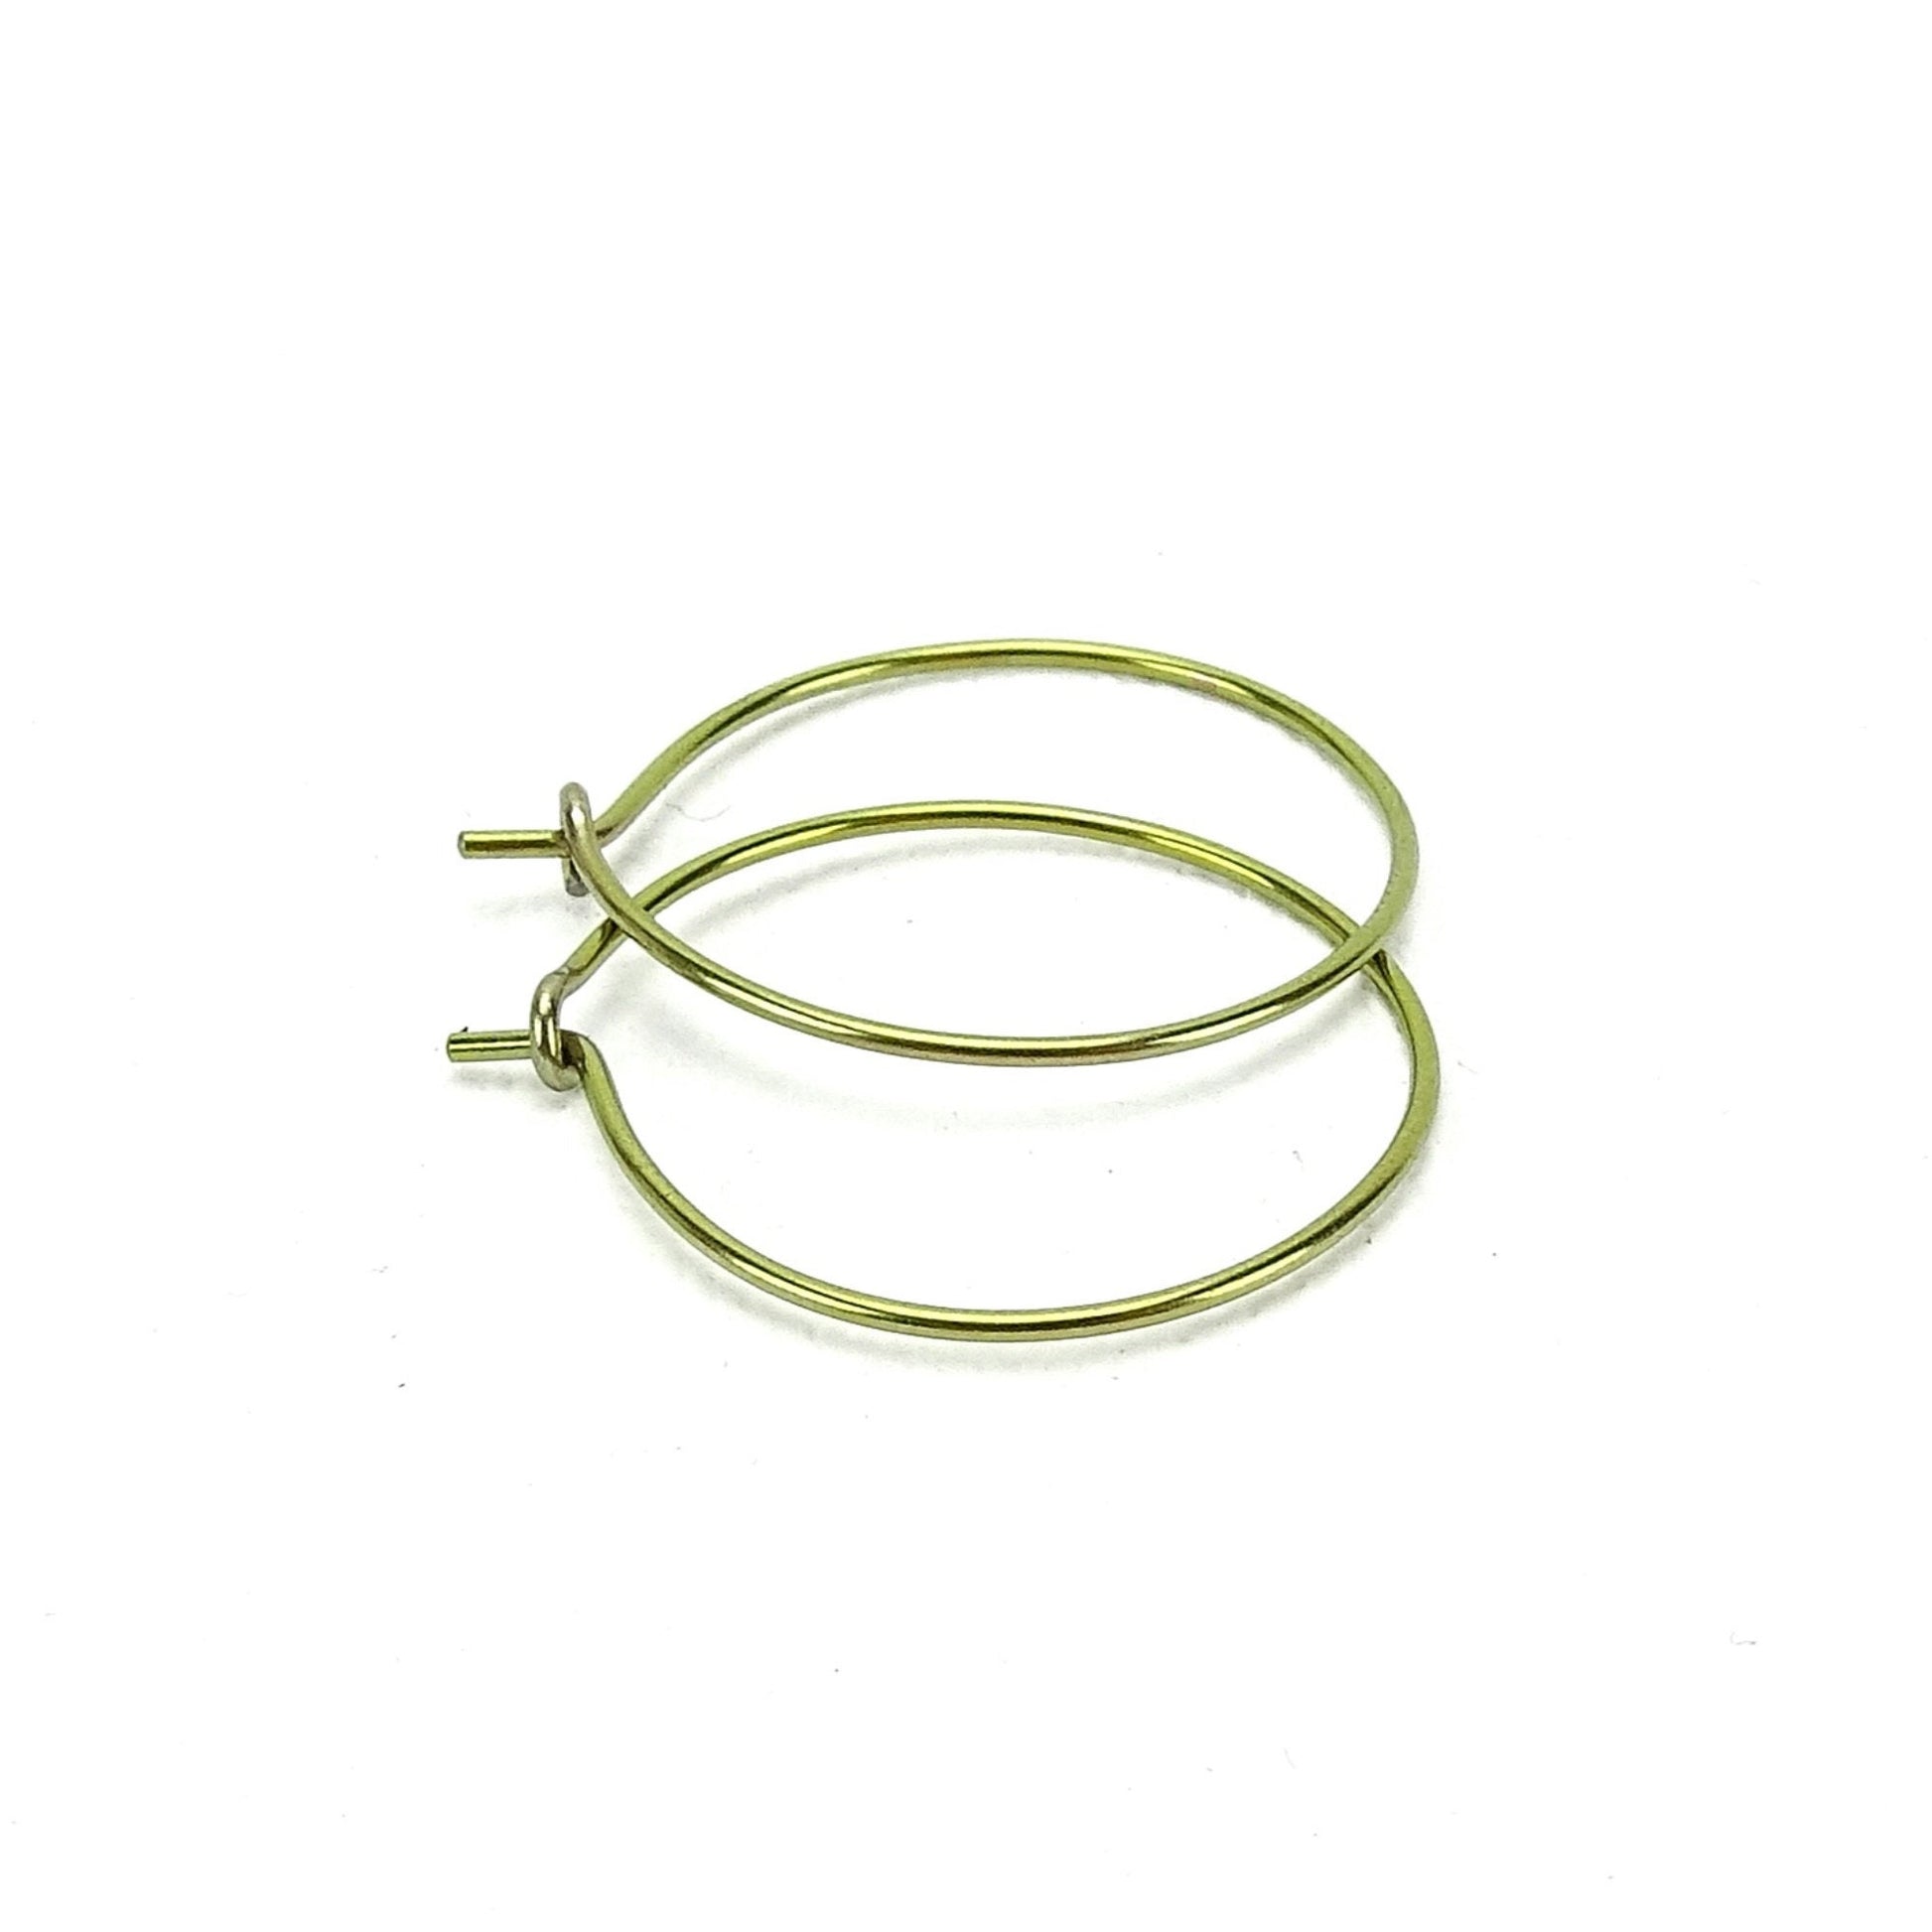 Niobium Medium Gold Hoop Earrings, Yellow Gold Color Niobium Hoops for Sensitive Ears, Nickel Free Hypoallergenic Jewelry